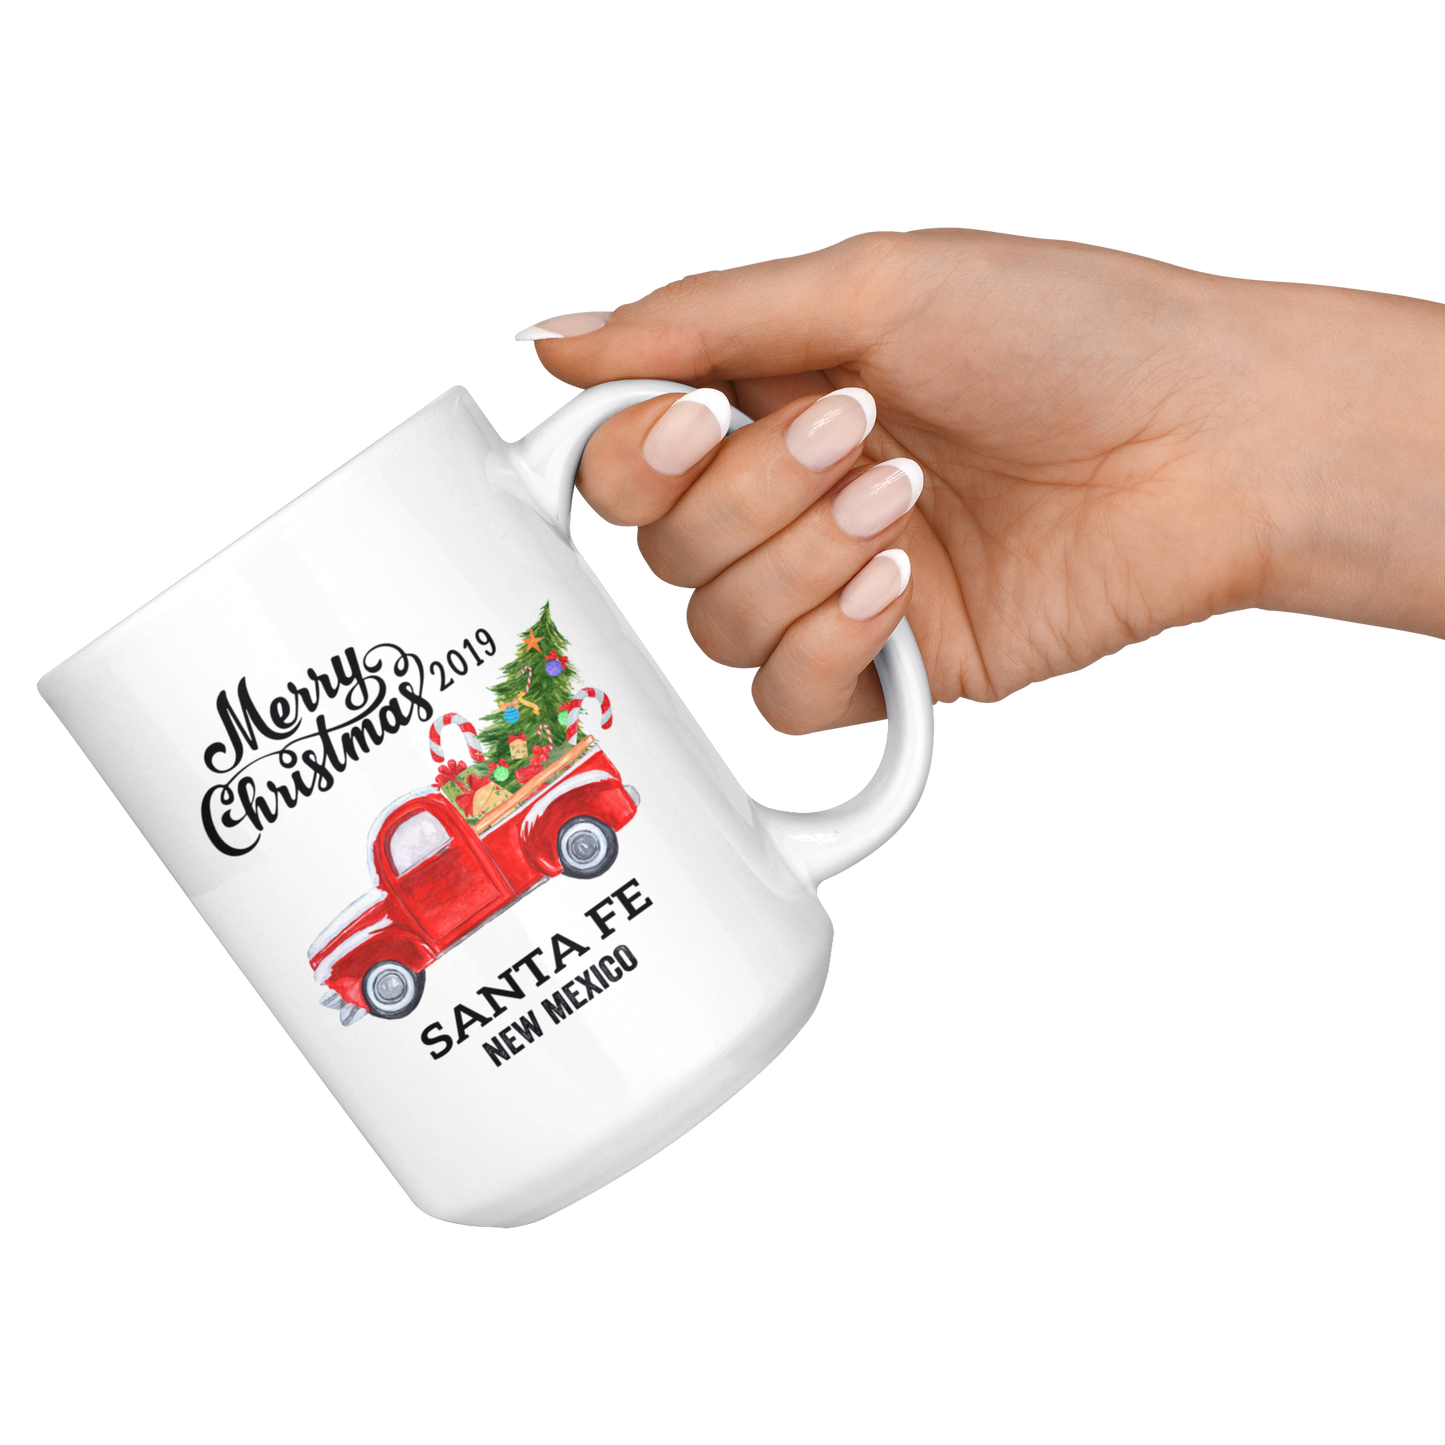 MUG01220657061-sp-16822 - Santa Fe New Mexico State Family New Home Mug 2019 Christmas